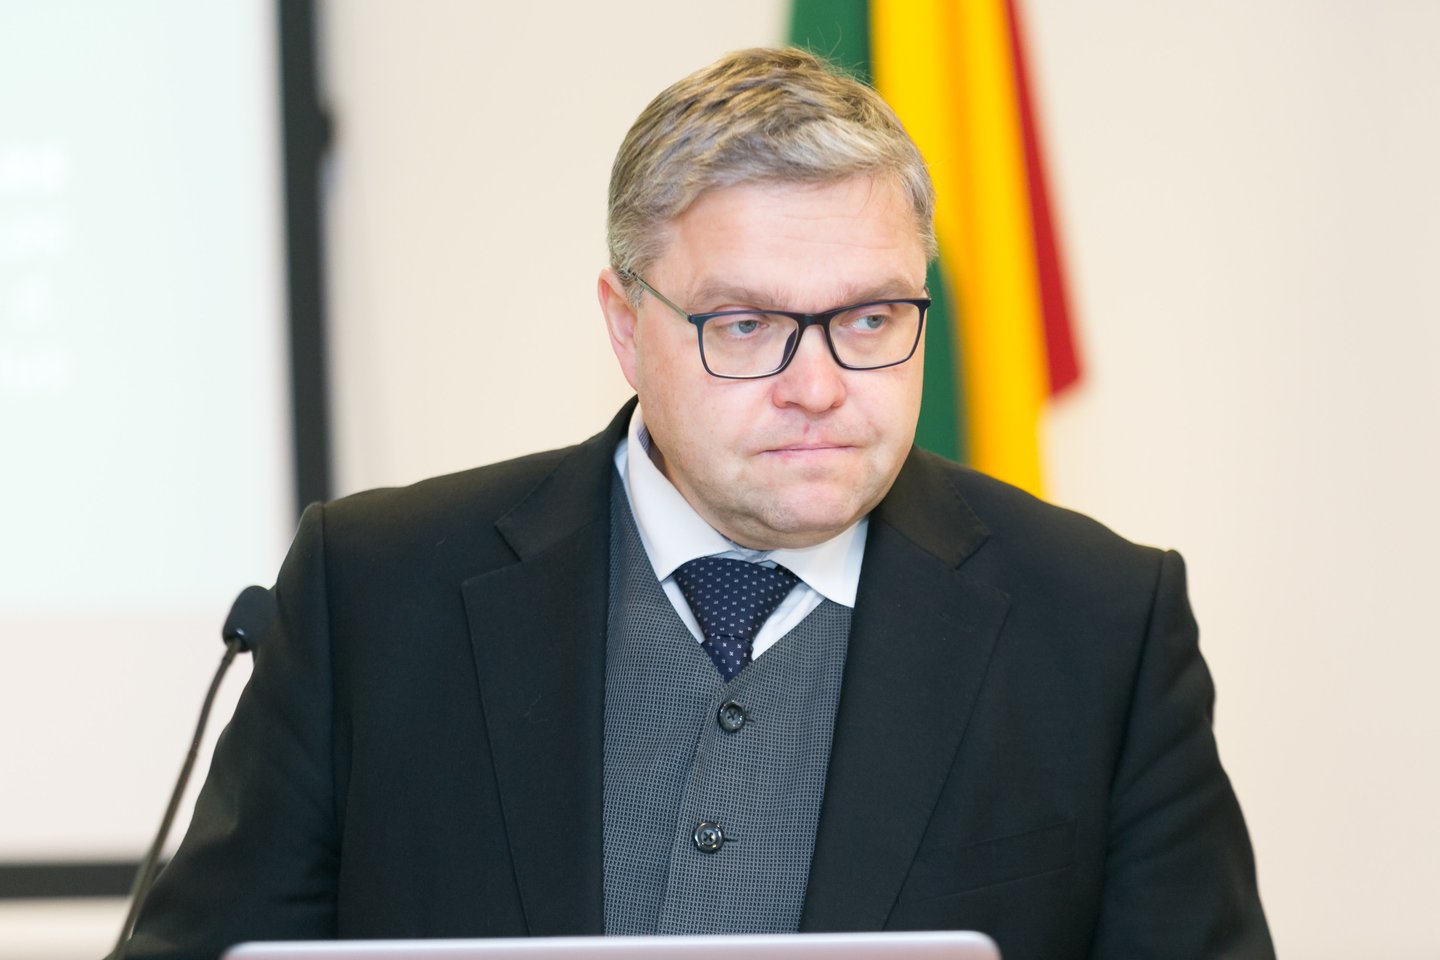 Lietuvos banko valdybos pirmininkas Vitas Vasiliauskas sako, kad per krizę palūkanų normos didėjimas nebuvo matomas.<br>T.Bauro nuotr.